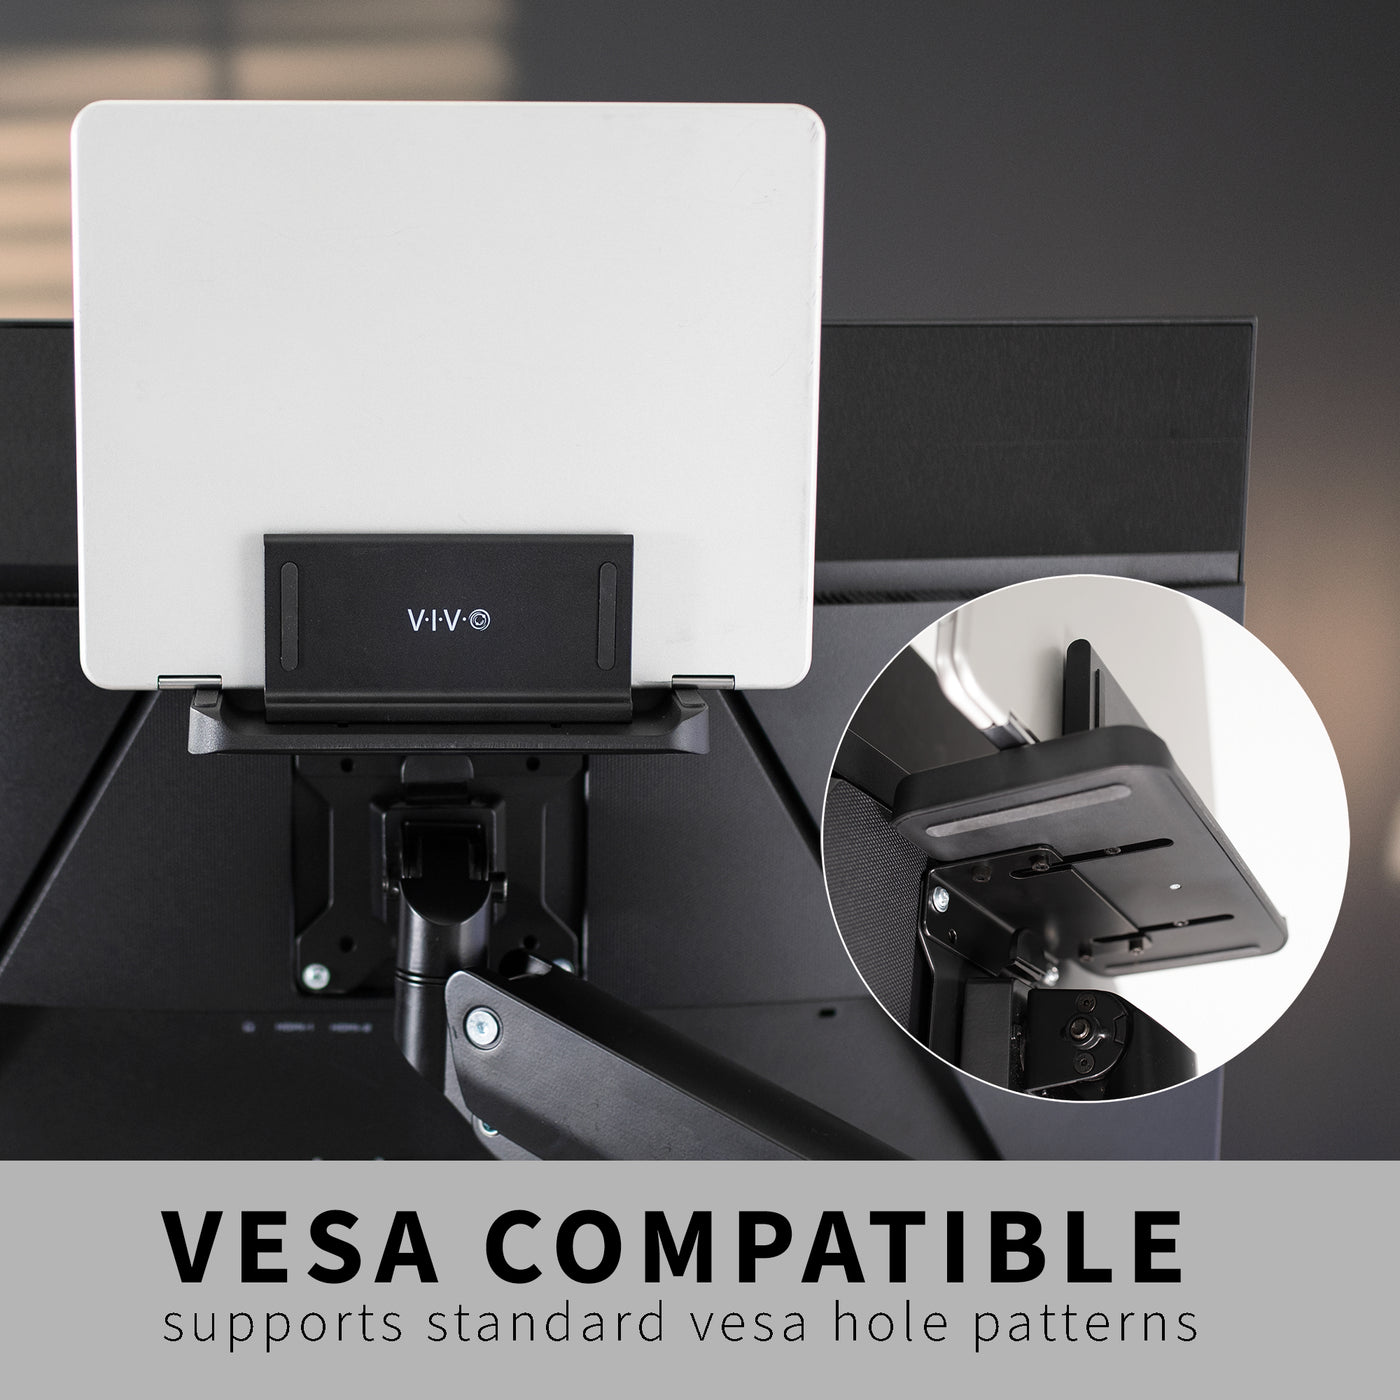 Vesa stand for mini PC